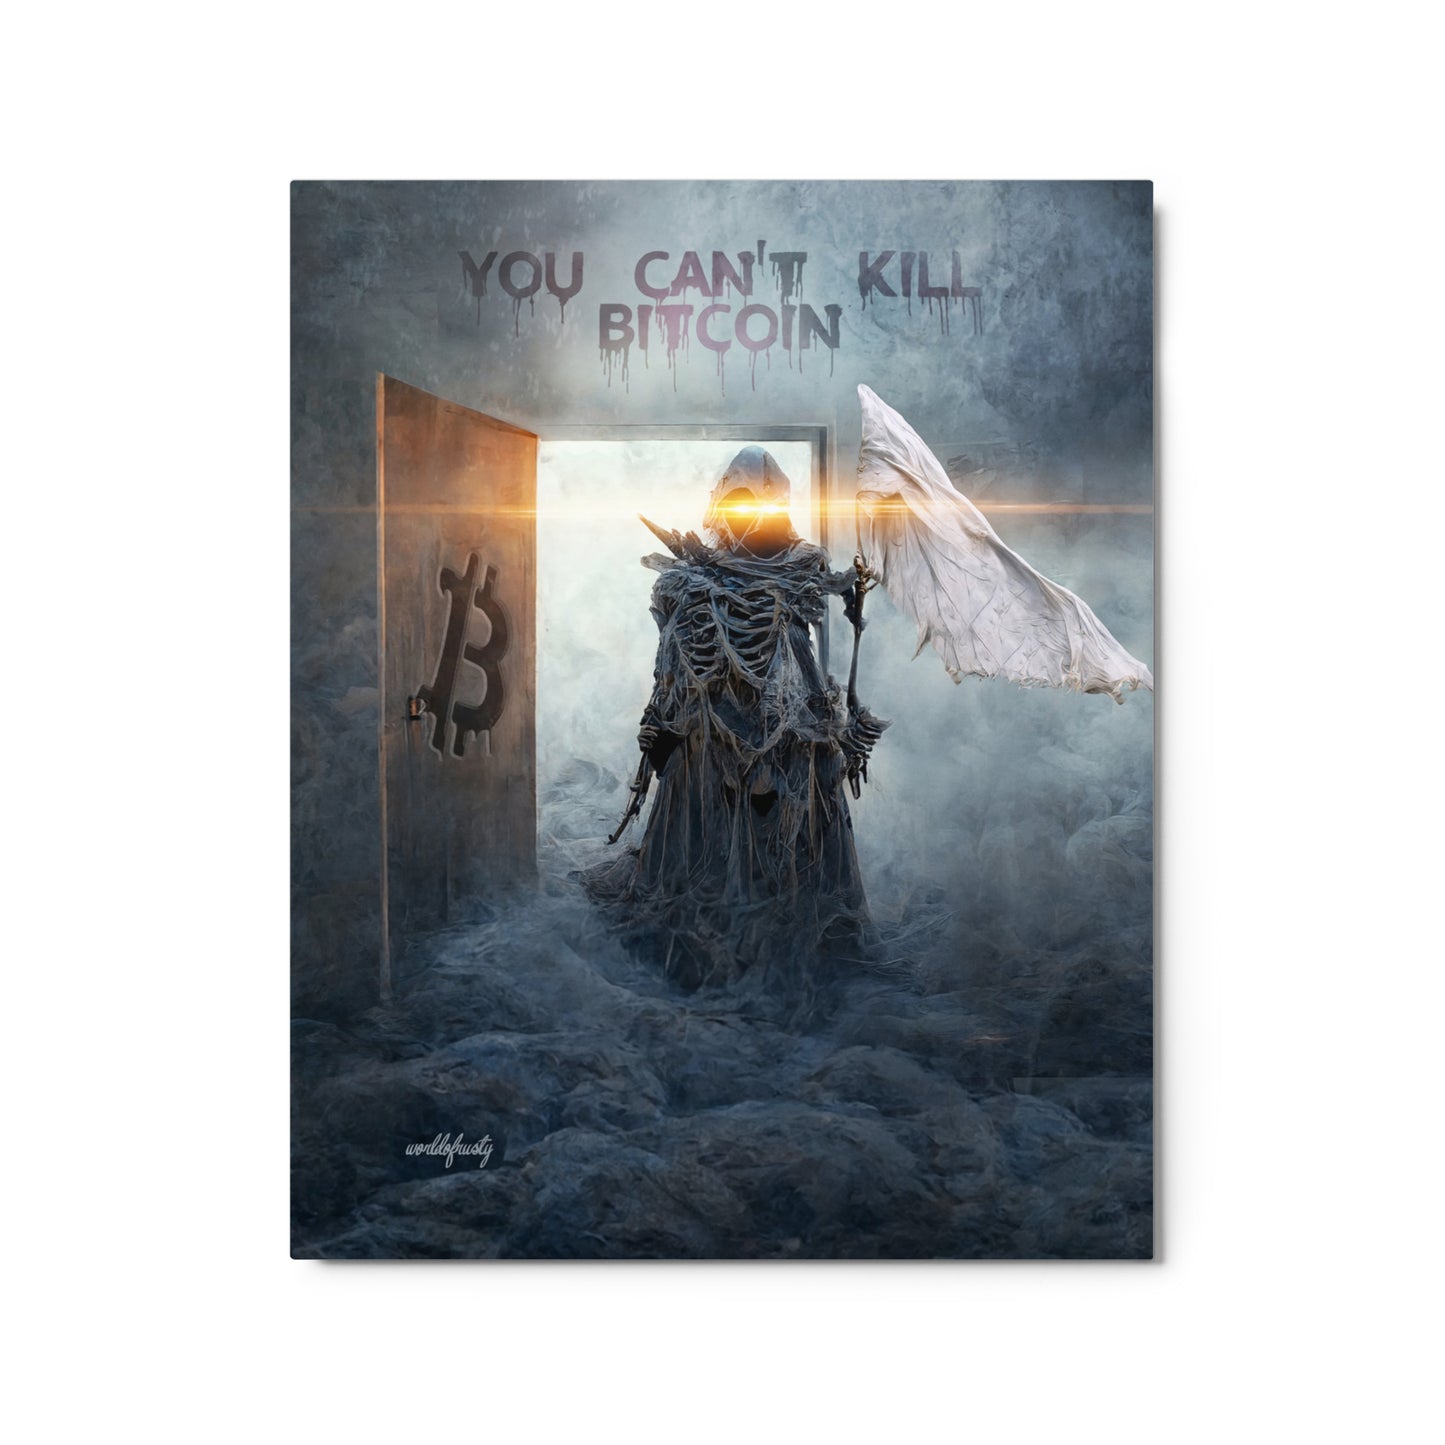 Metal BTC Card Display Artwork - The Reaper's Surrender